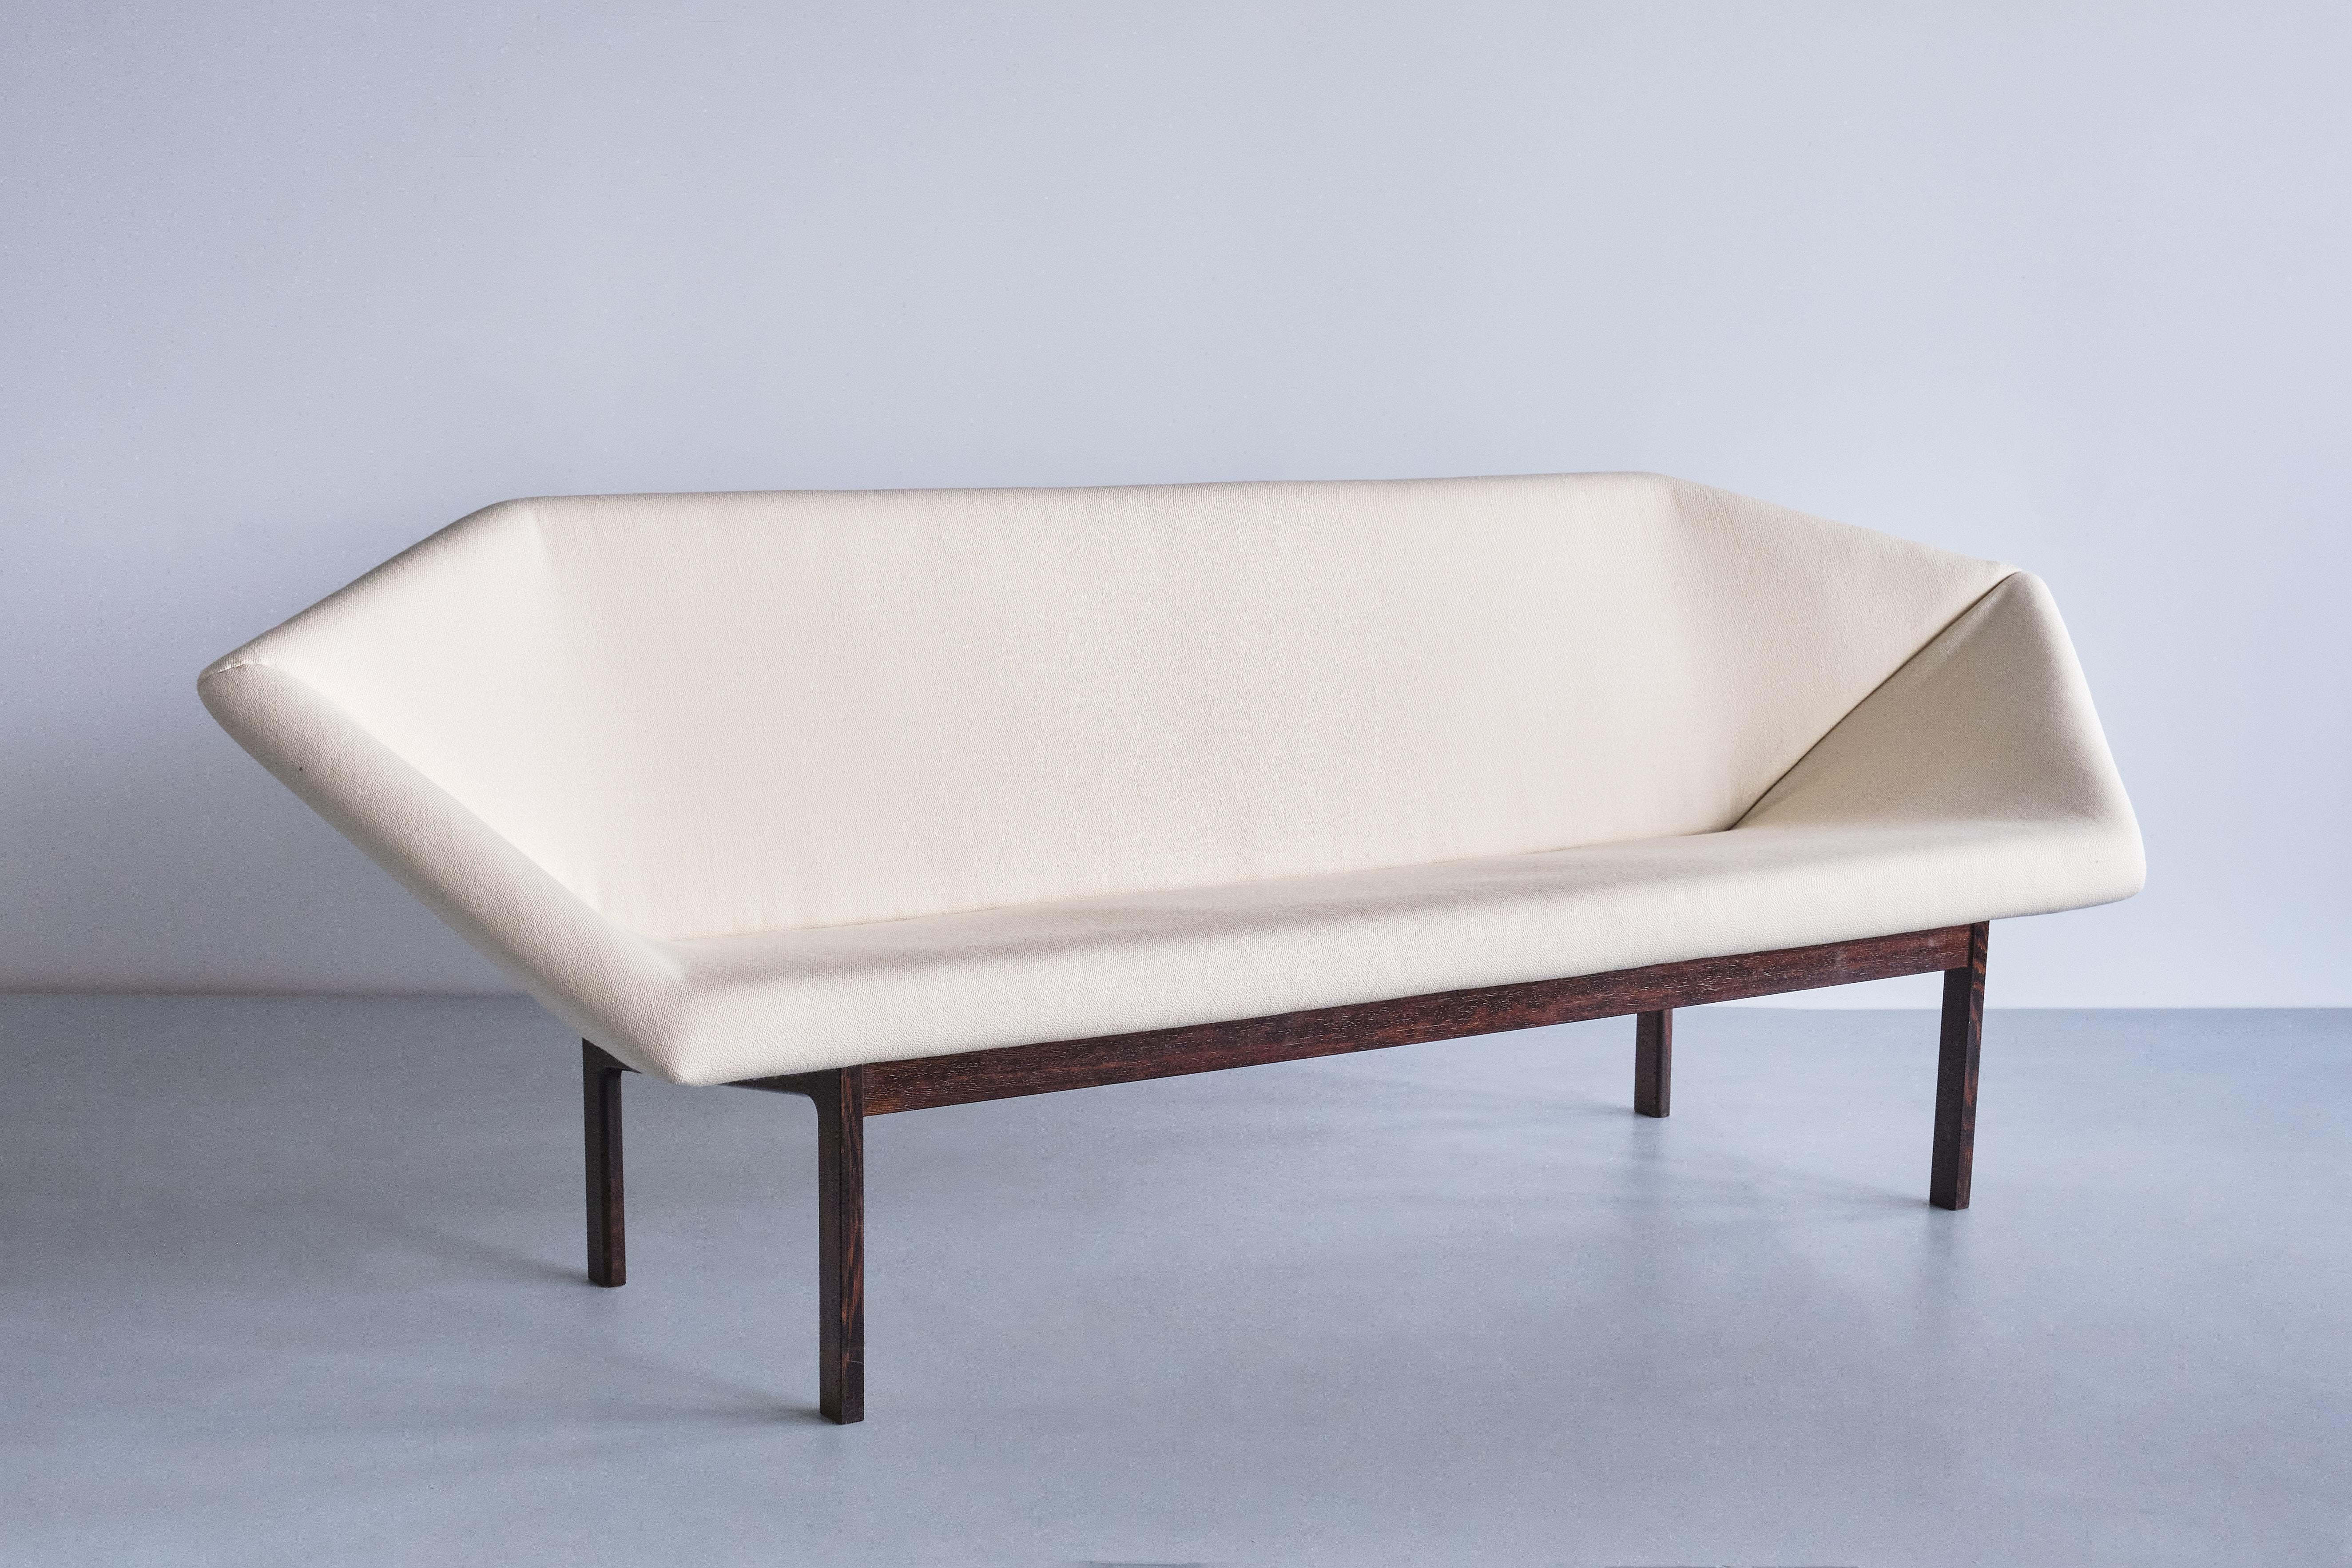 Ce canapé extrêmement rare appelé Prisma a été conçu par Tove & Edvard Kindt-Larsen en 1963. Il a été fabriqué par l'ébéniste Ludvig Pontoppidan au Danemark.

Le design distinct est marqué par la forme allongée et géométrique de l'assise et du